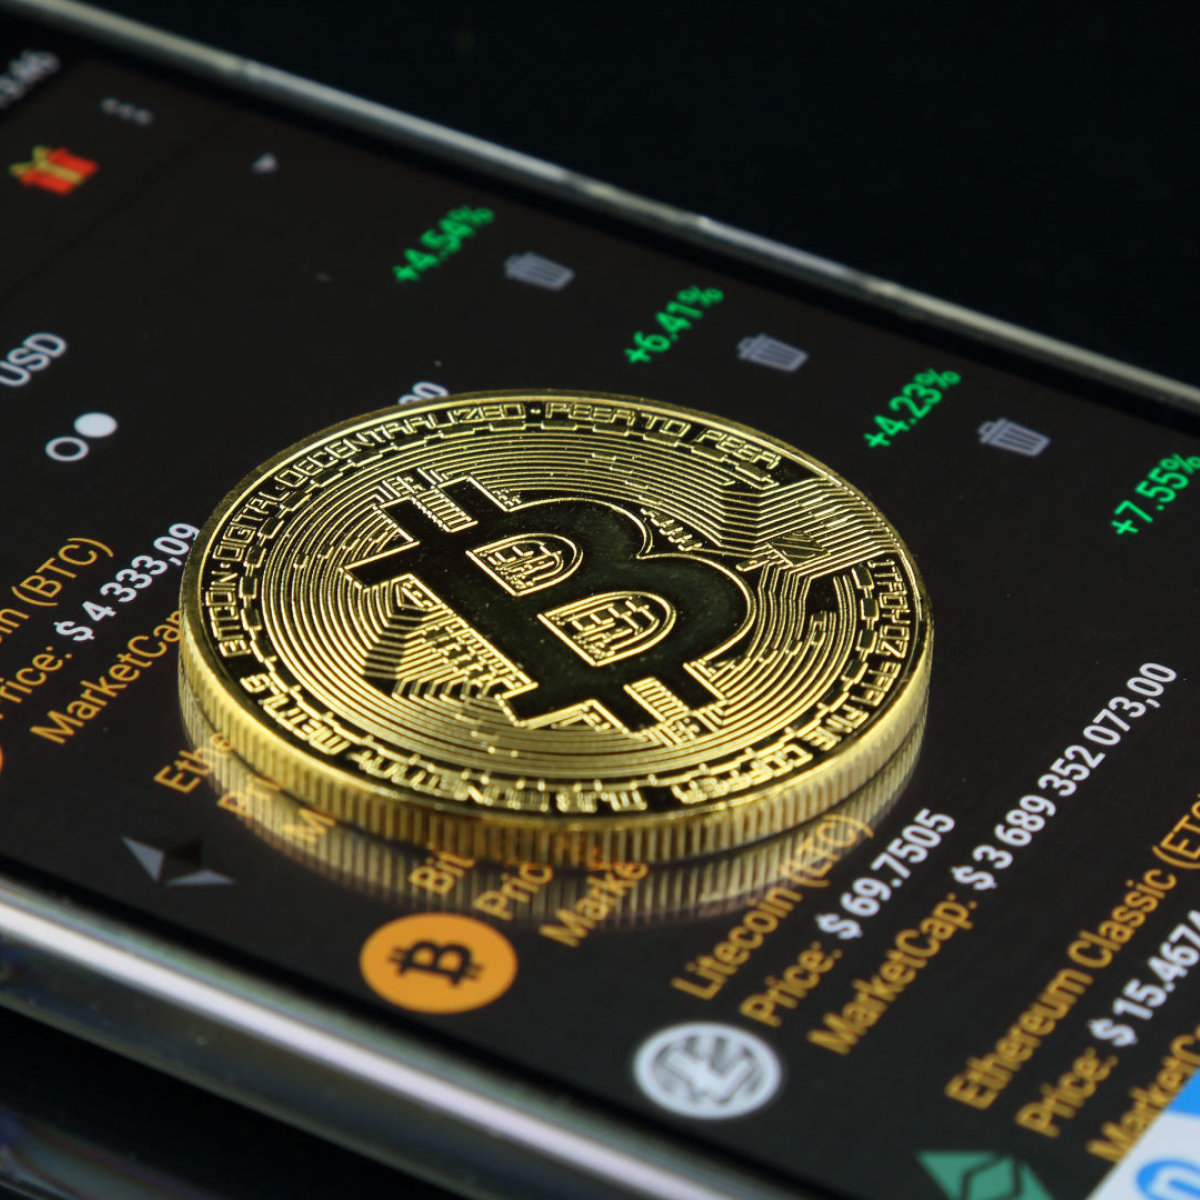 bendra adresų rinka bitcoin coinbase pradėti bitkoinų verslą